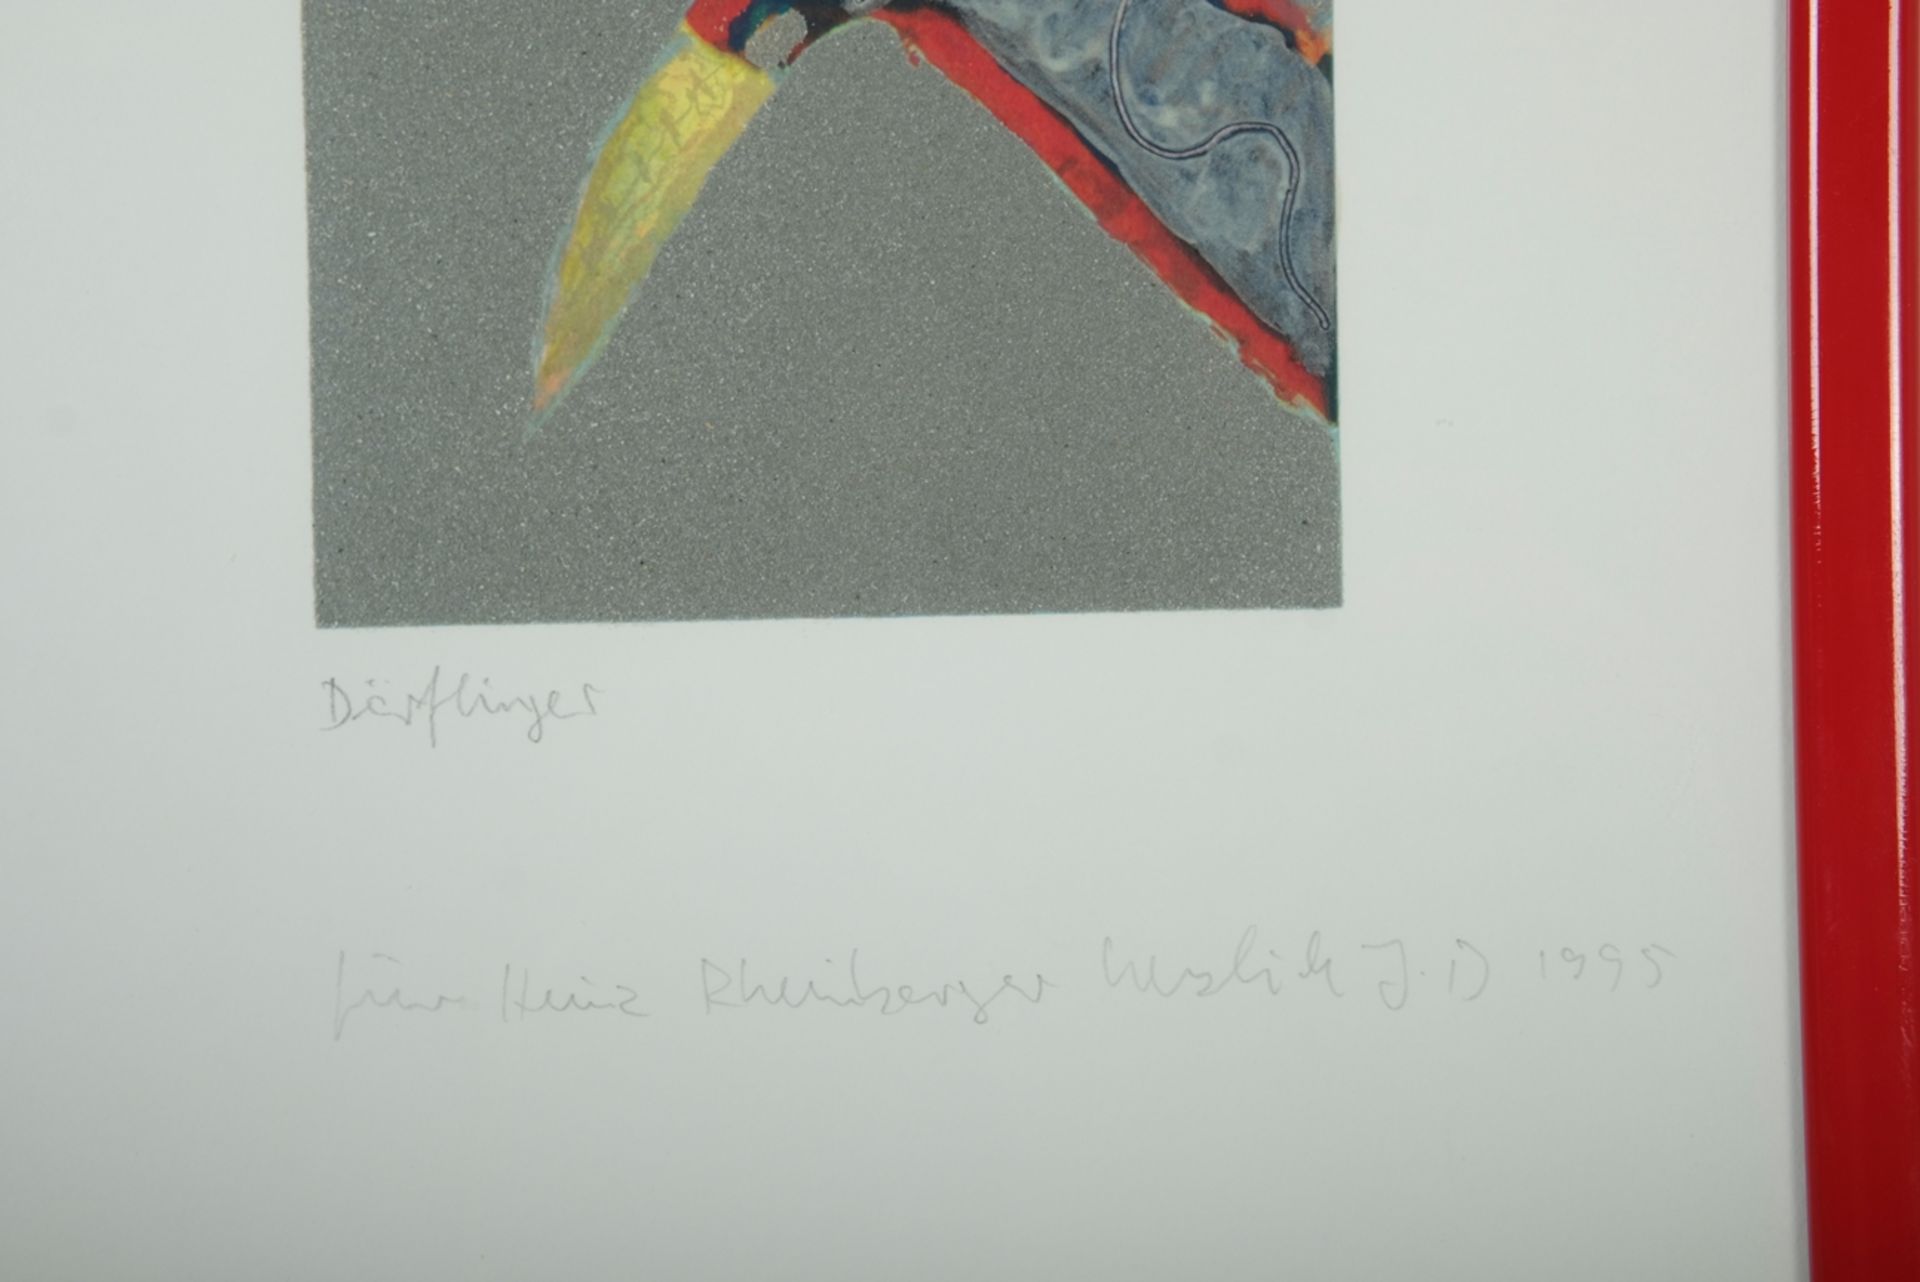 Dörflinger, Johannes (born Constance 1941) "Flugzeug/Rakete", colour lithograph, part of triptych,  - Image 3 of 3